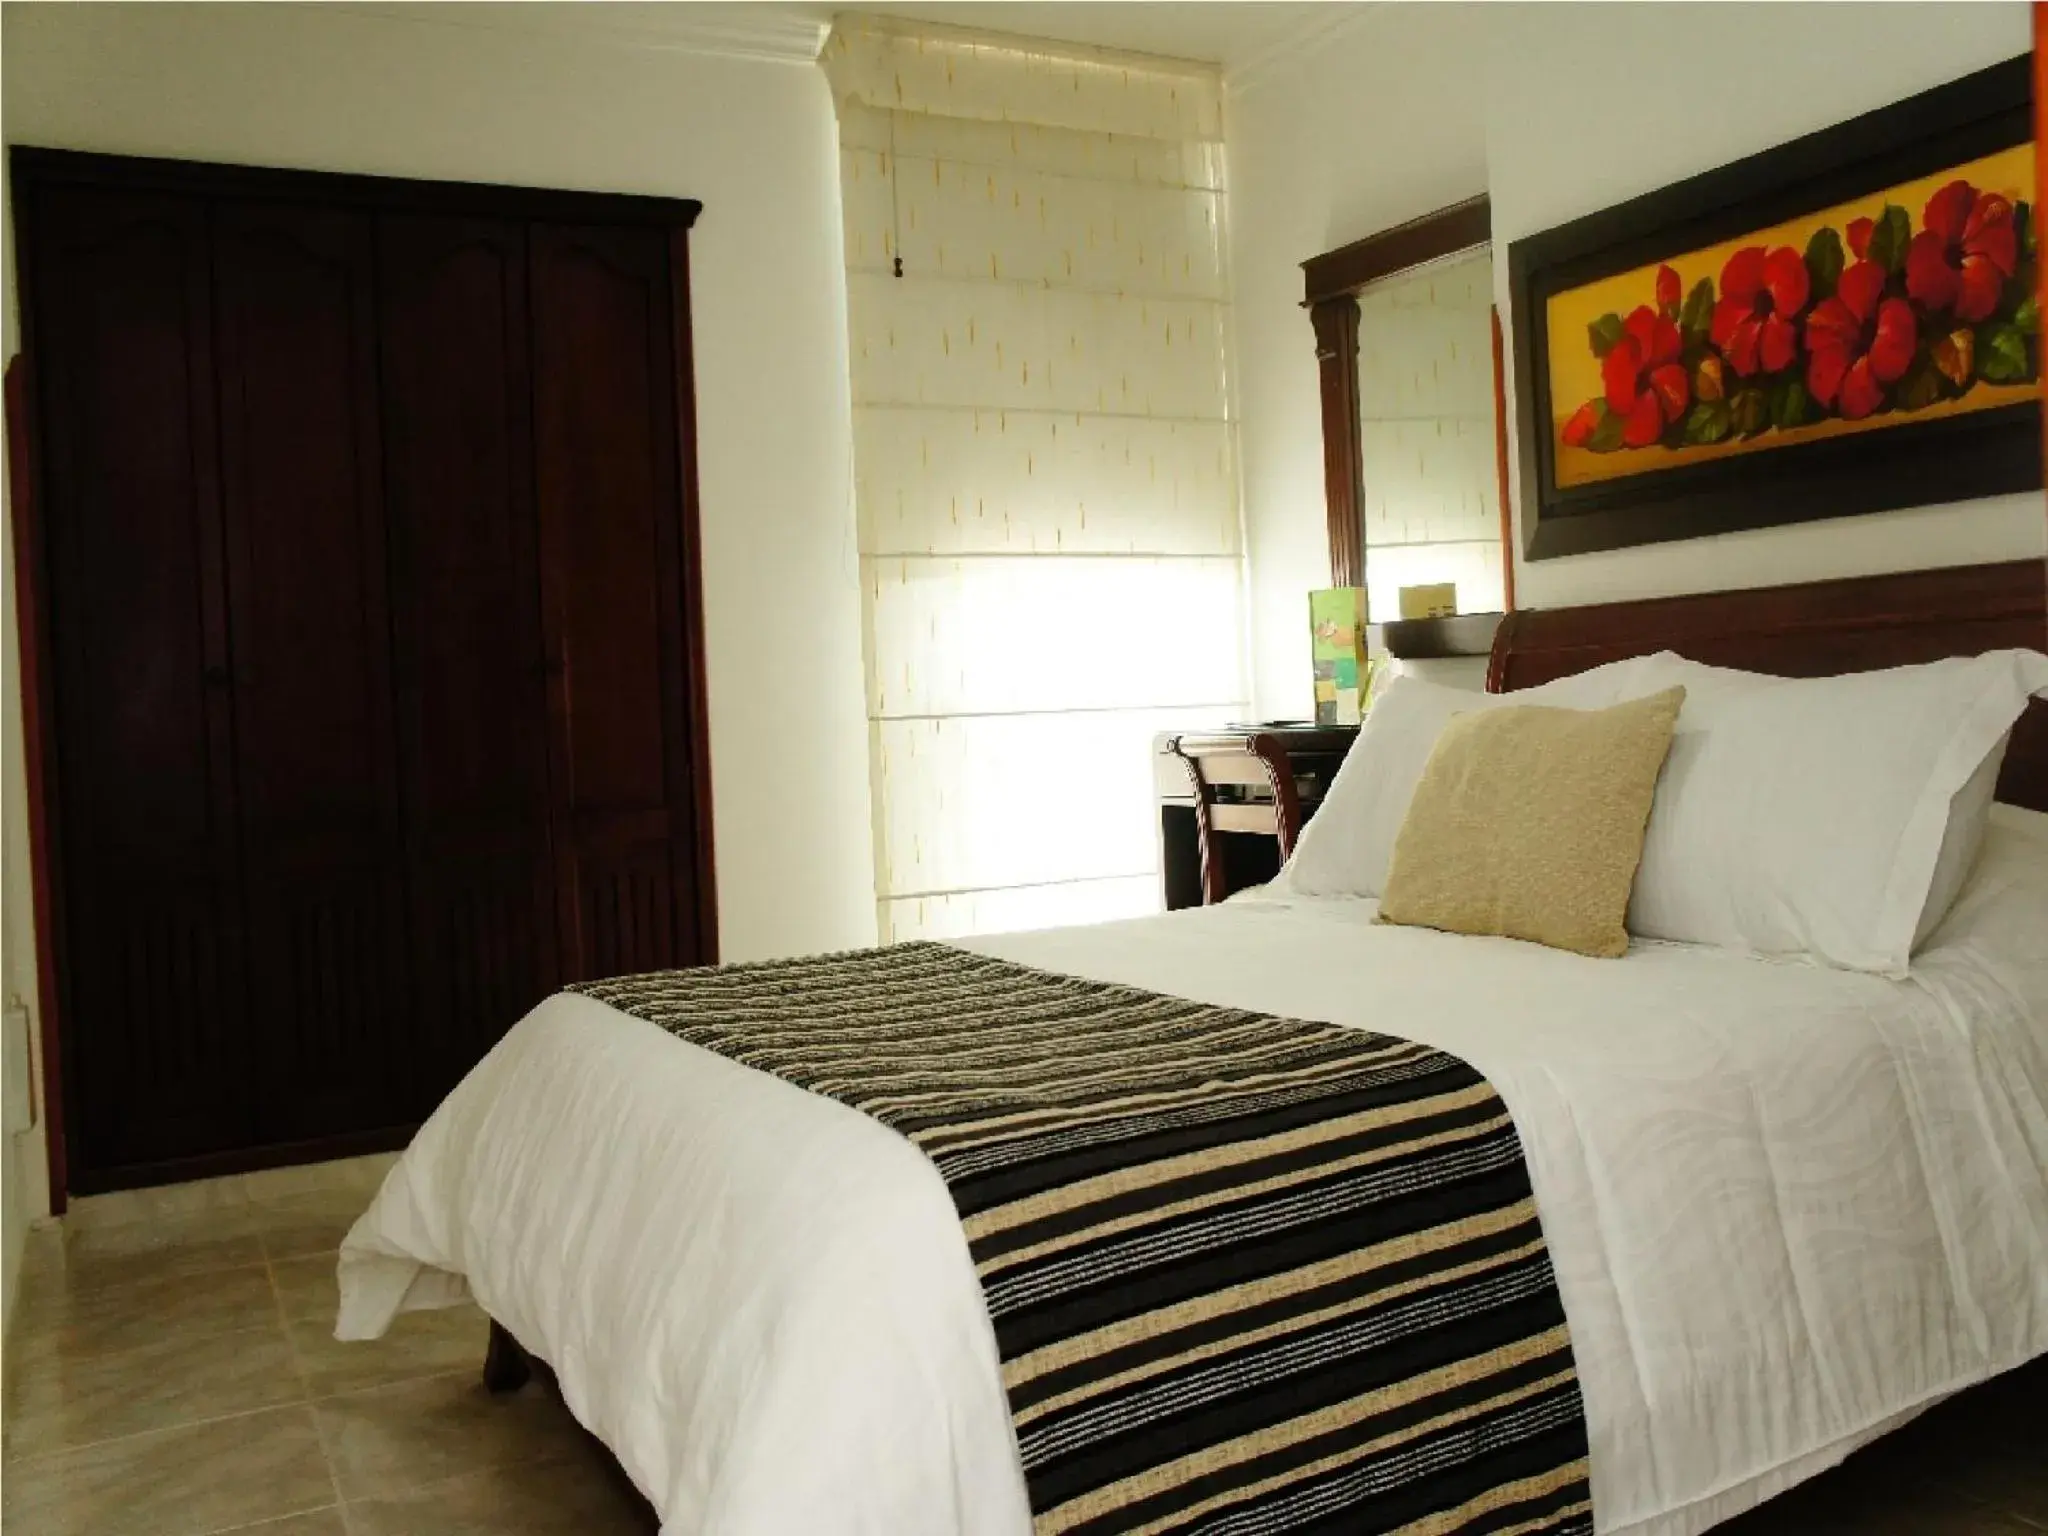 Bedroom, Room Photo in Hotel Buena Vista